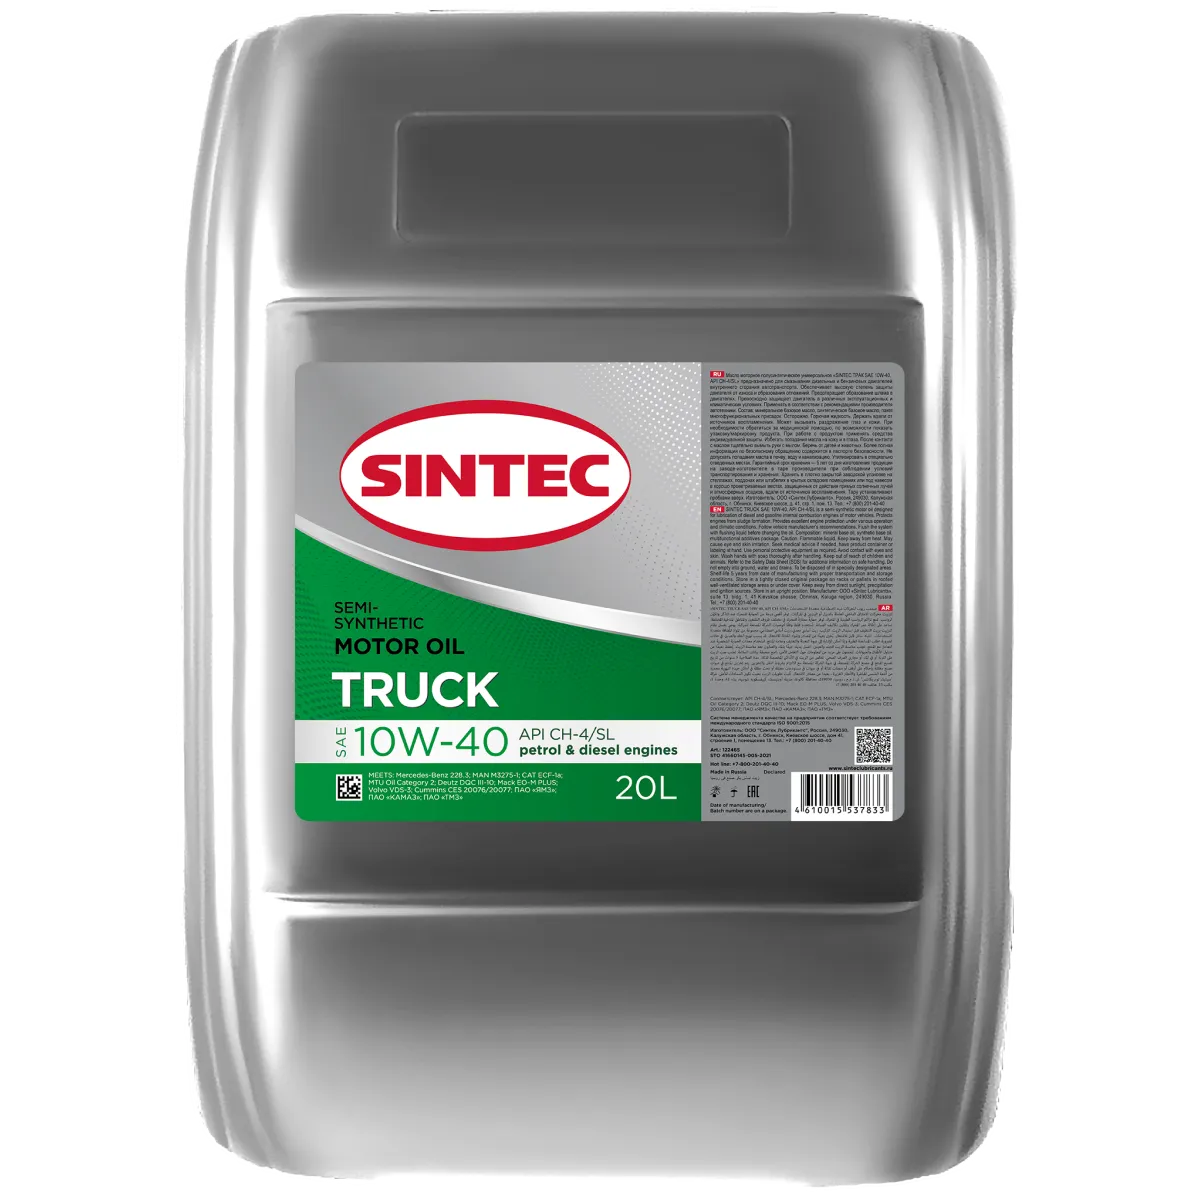 SINTEC TRUCK SAE 10W-40 API CH-4/SL Масла для коммерческой техники: описание, применение, свойства, где
							купить